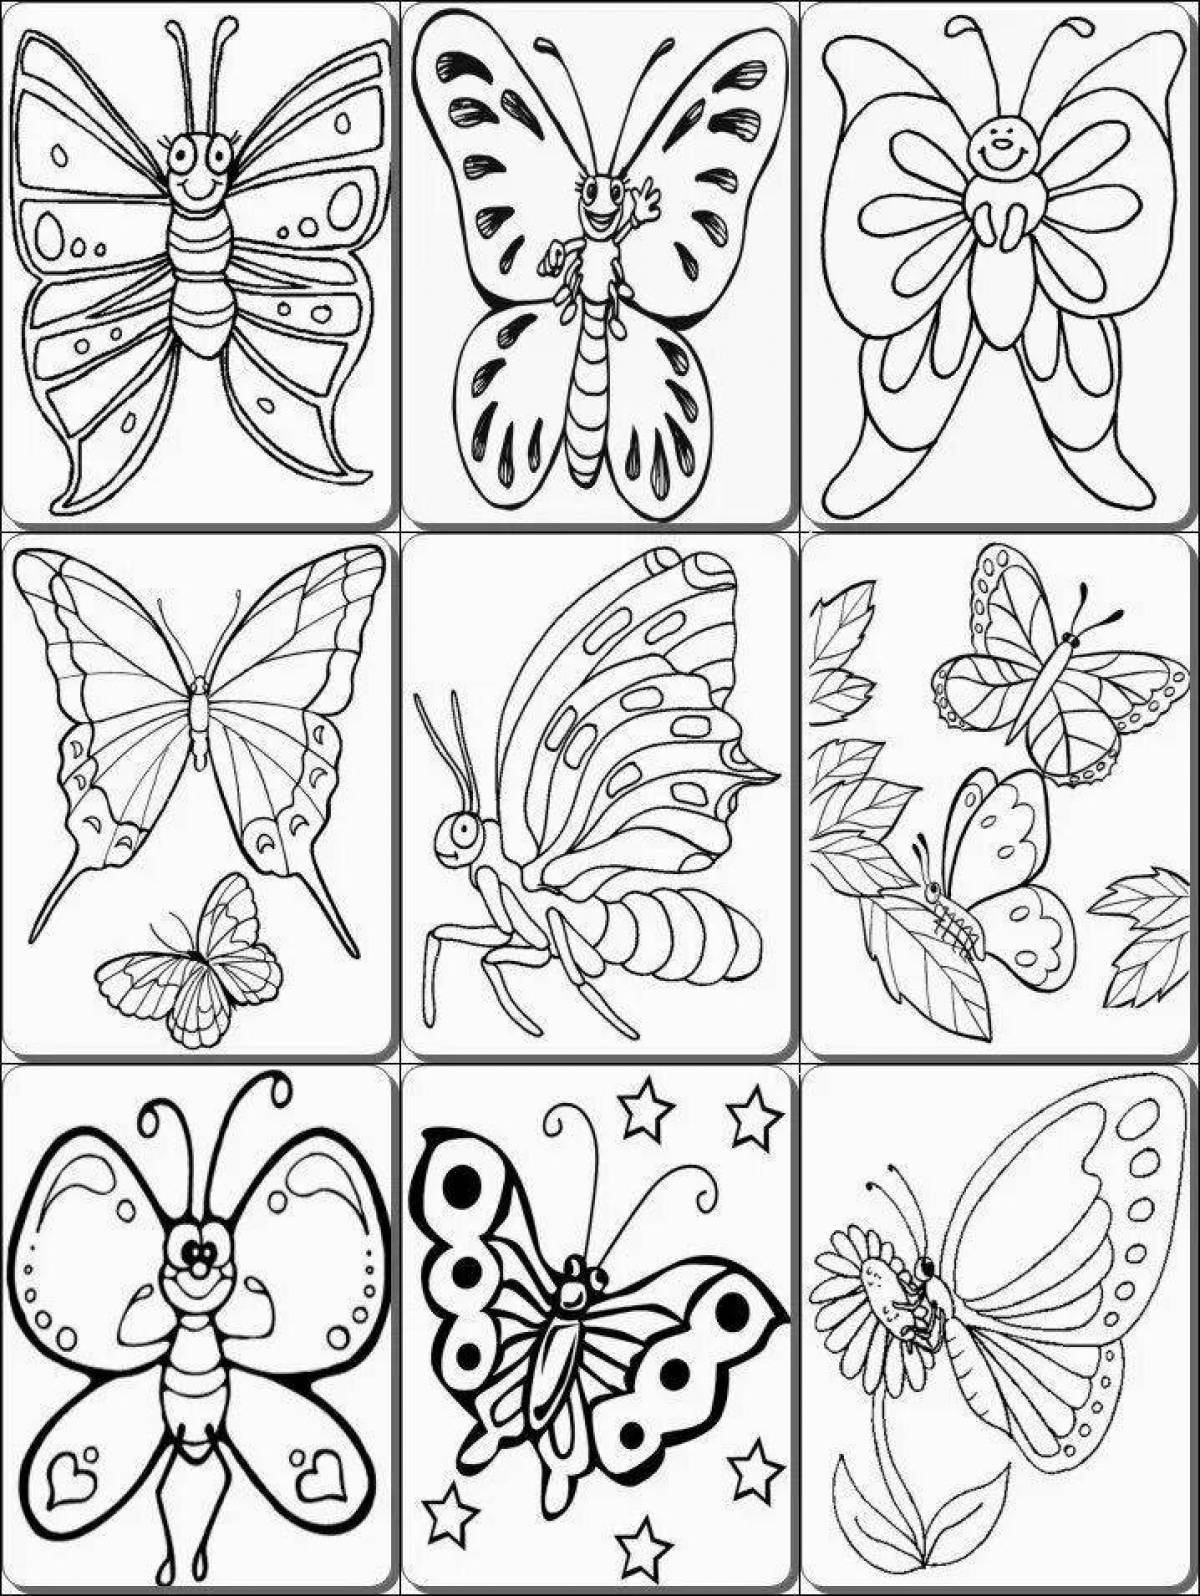 Насекомые раскраска для детей 6 7 лет. Раскраска "бабочки". Небольшие картинки для раскрашивания. Насекомые. Раскраска. Раскраски бабочки для детей 6-7 лет.